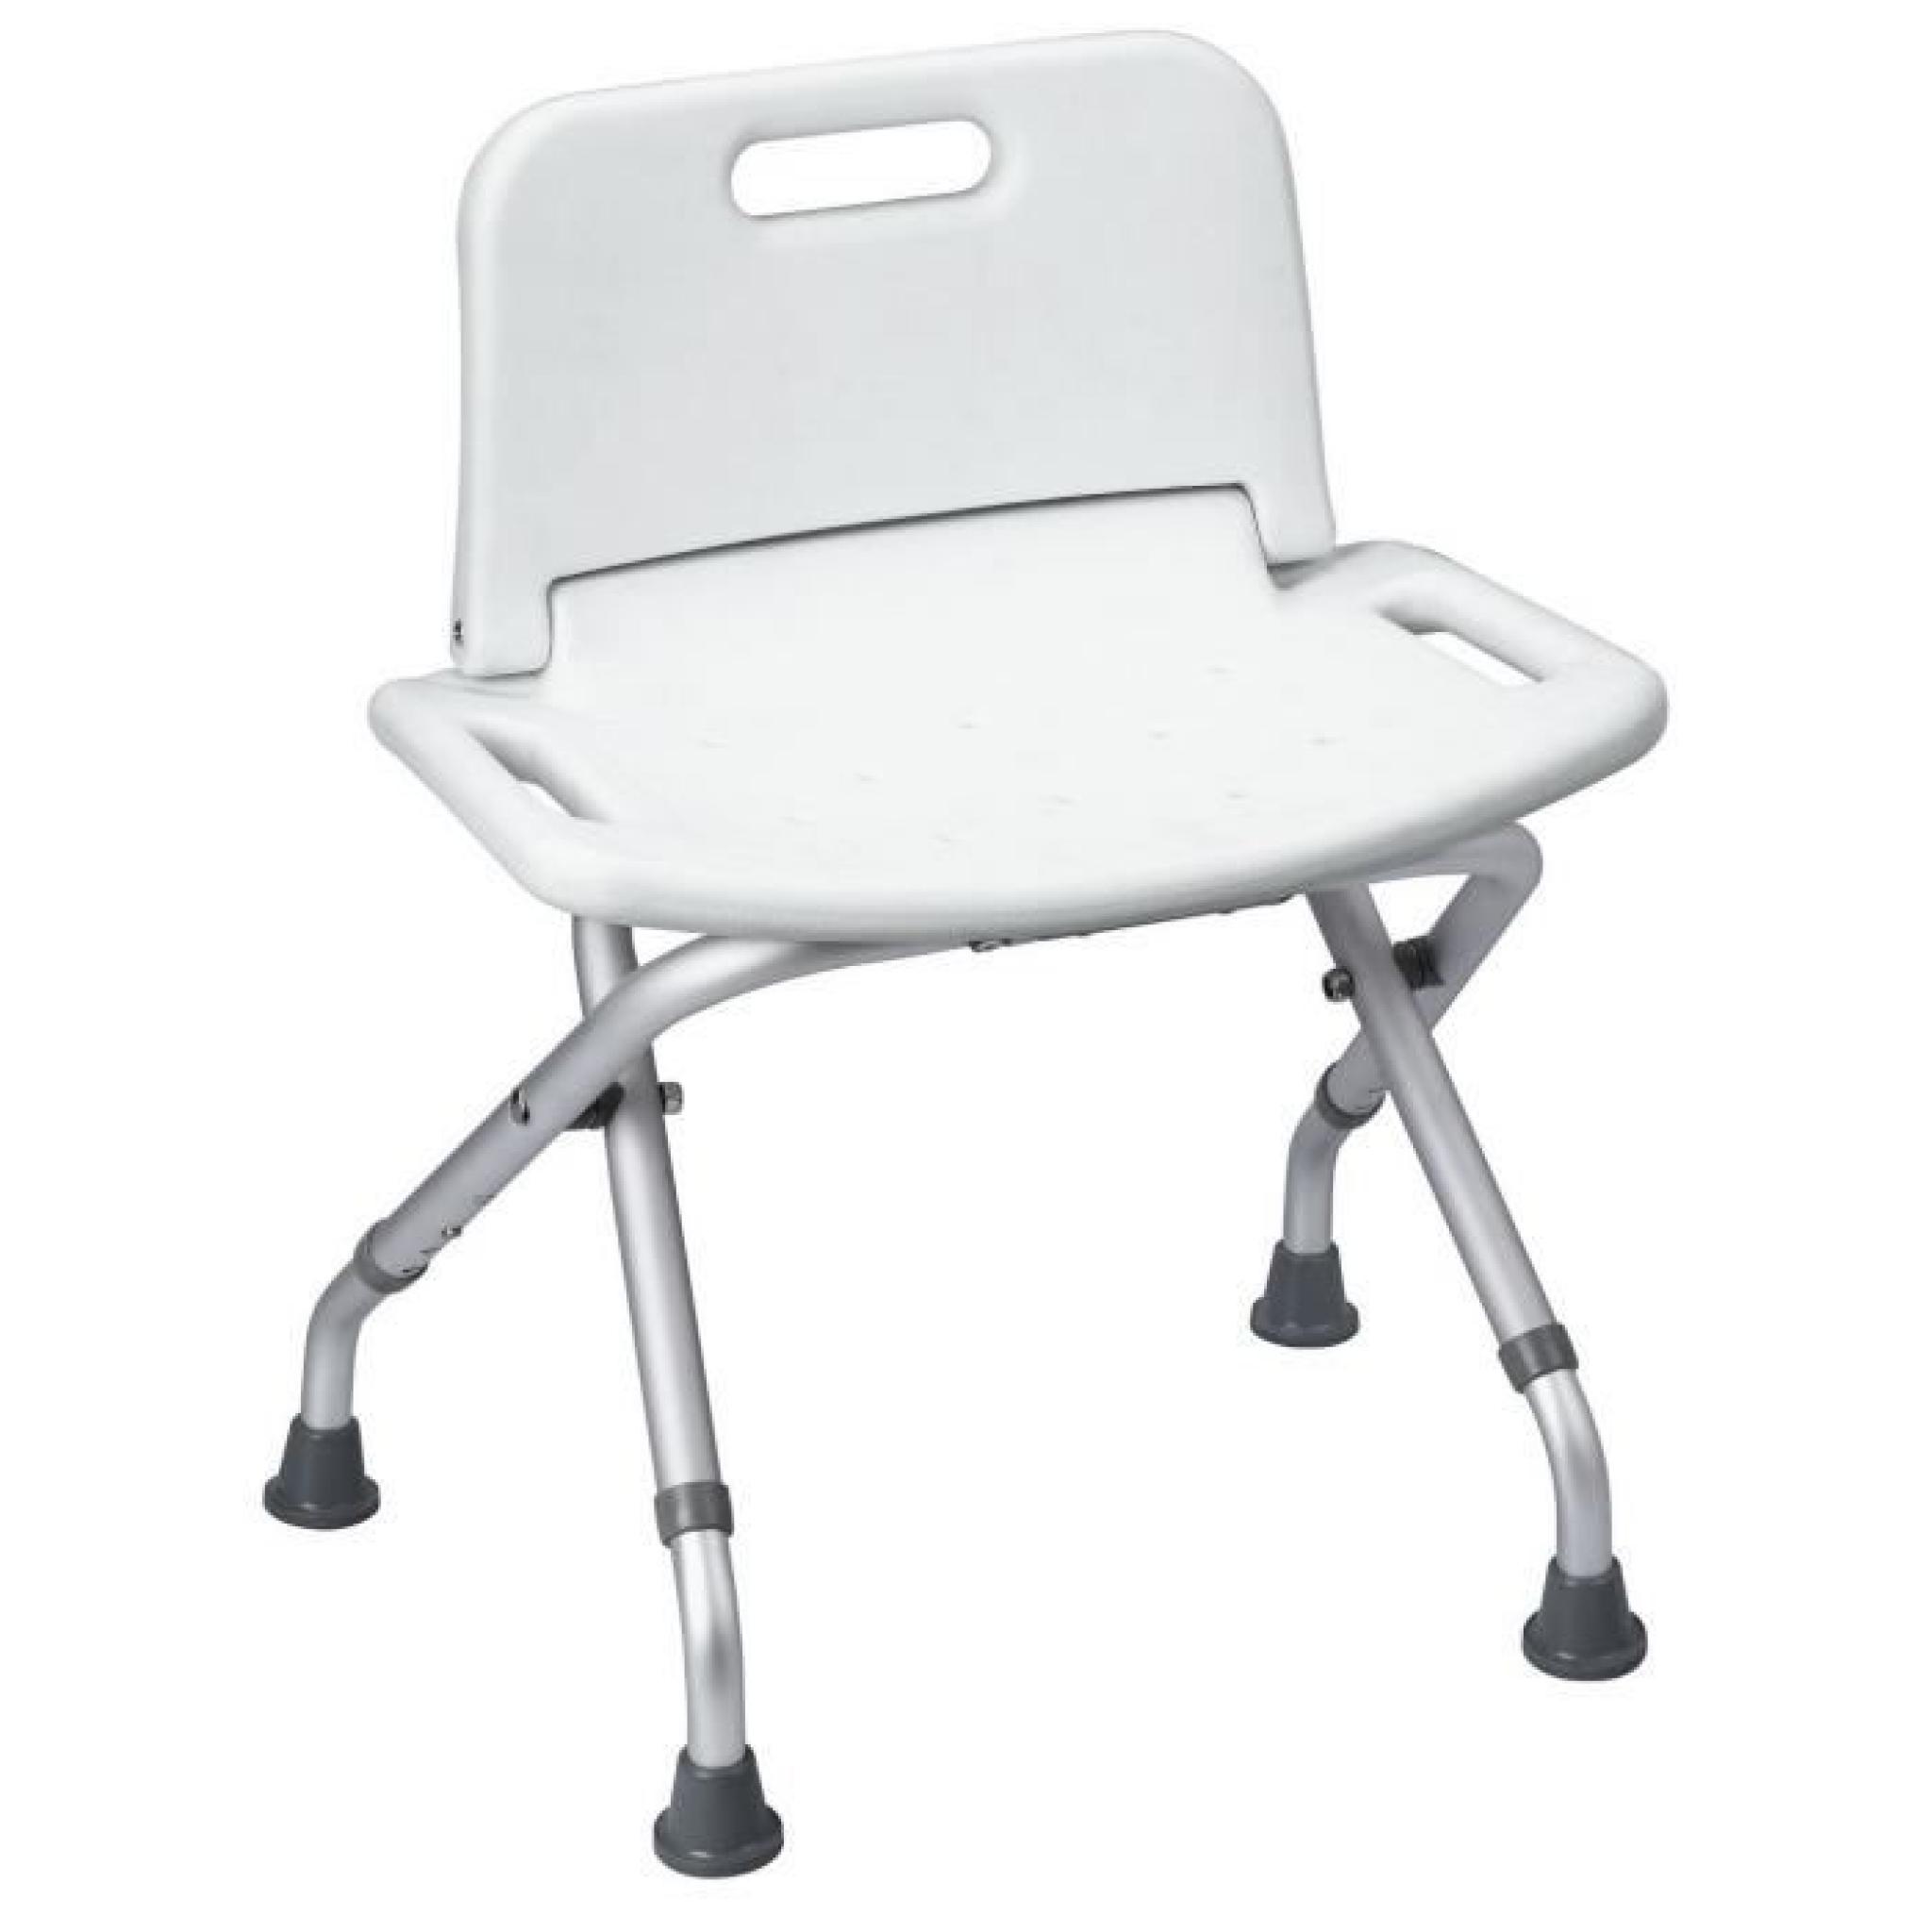 Chaise de douche en aluminium blanc 49x46x66cm Security-